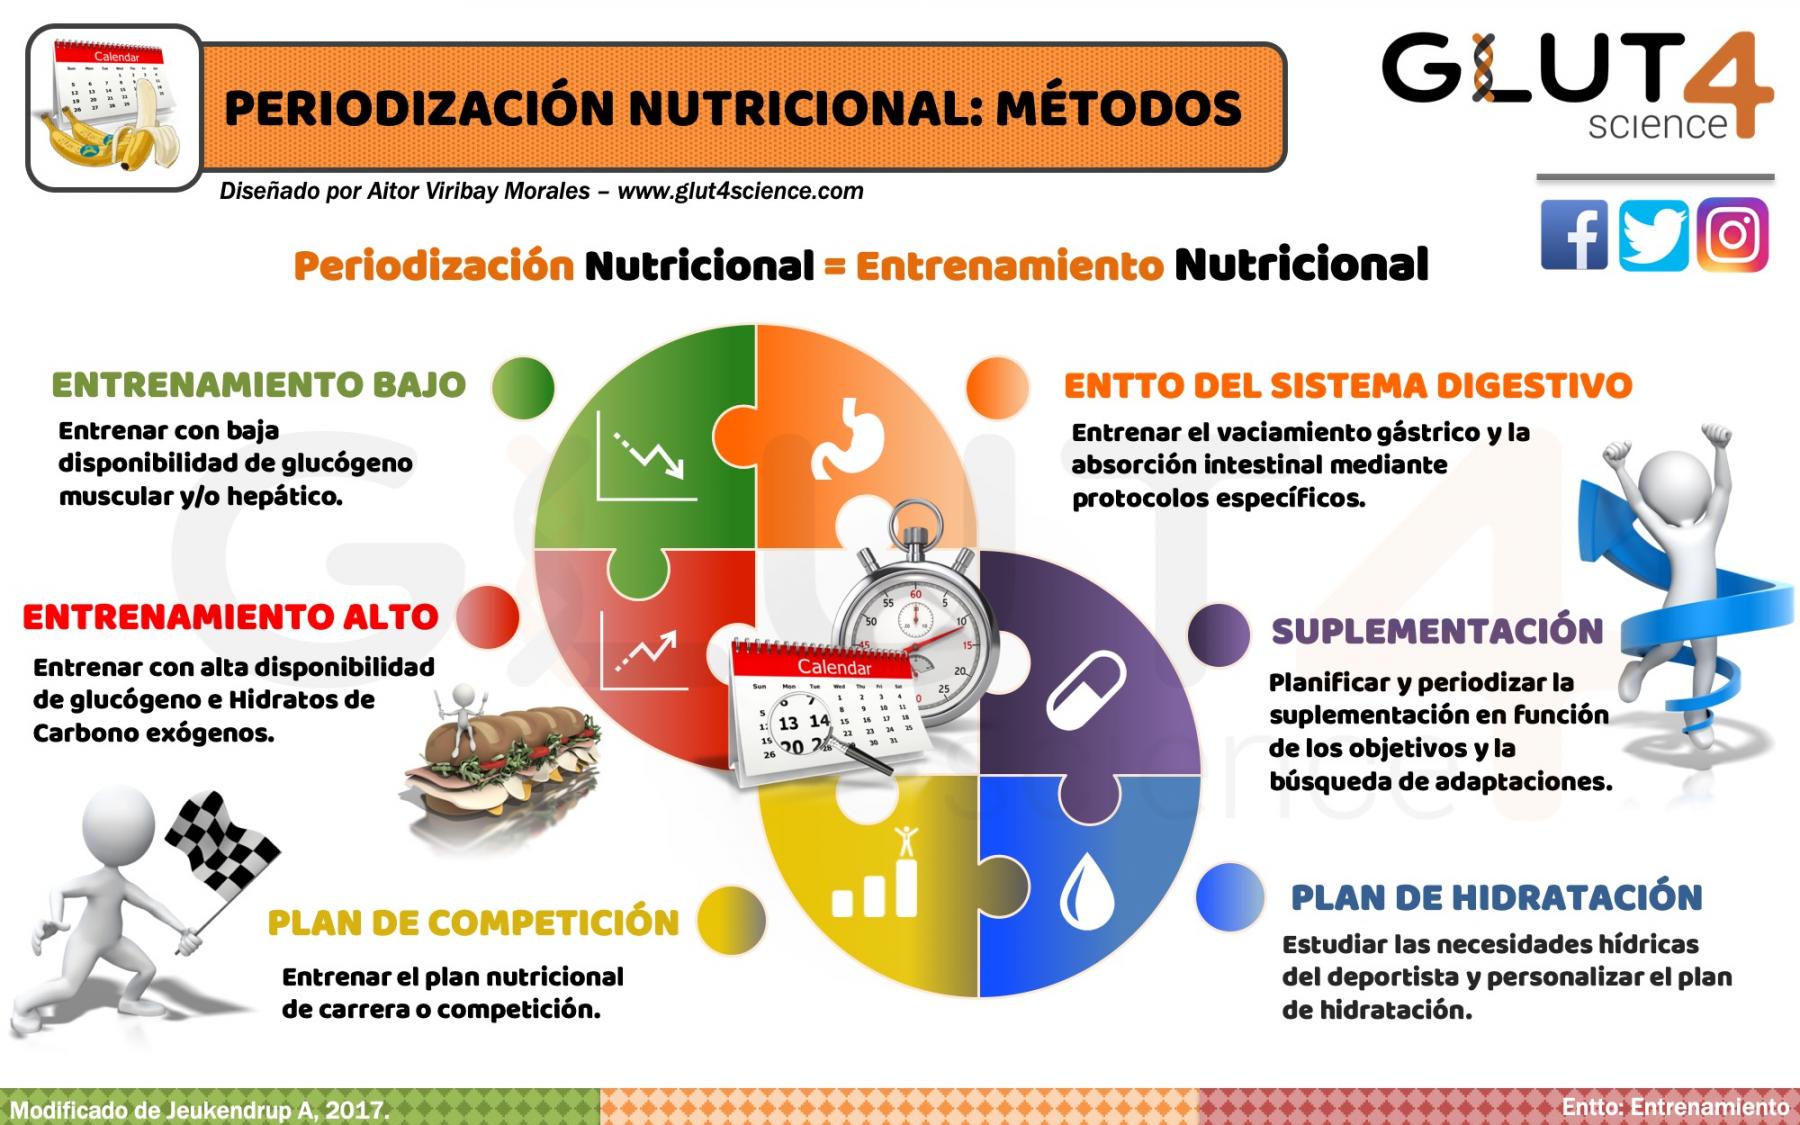 Métodos de Periodización Nutricional - Glut4science